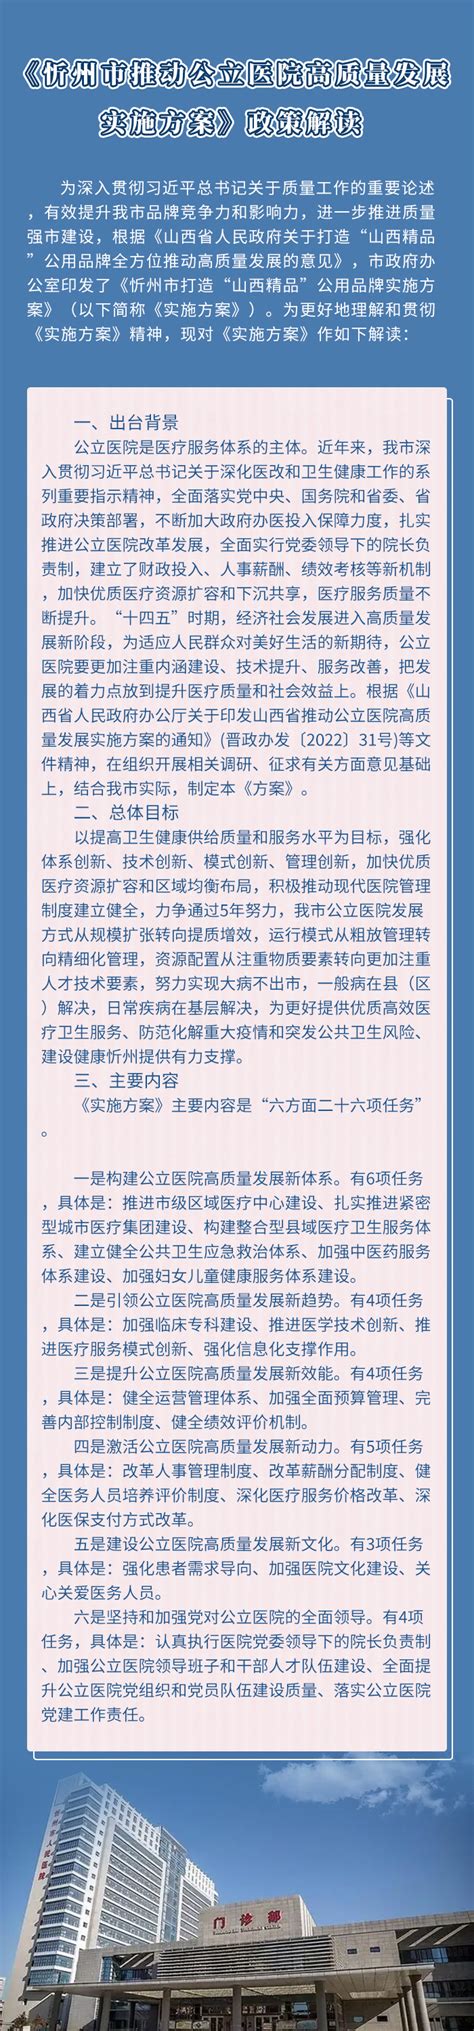 《忻州经济开发区起步区控制性详细规划》KY-G-01地块修改方案公示